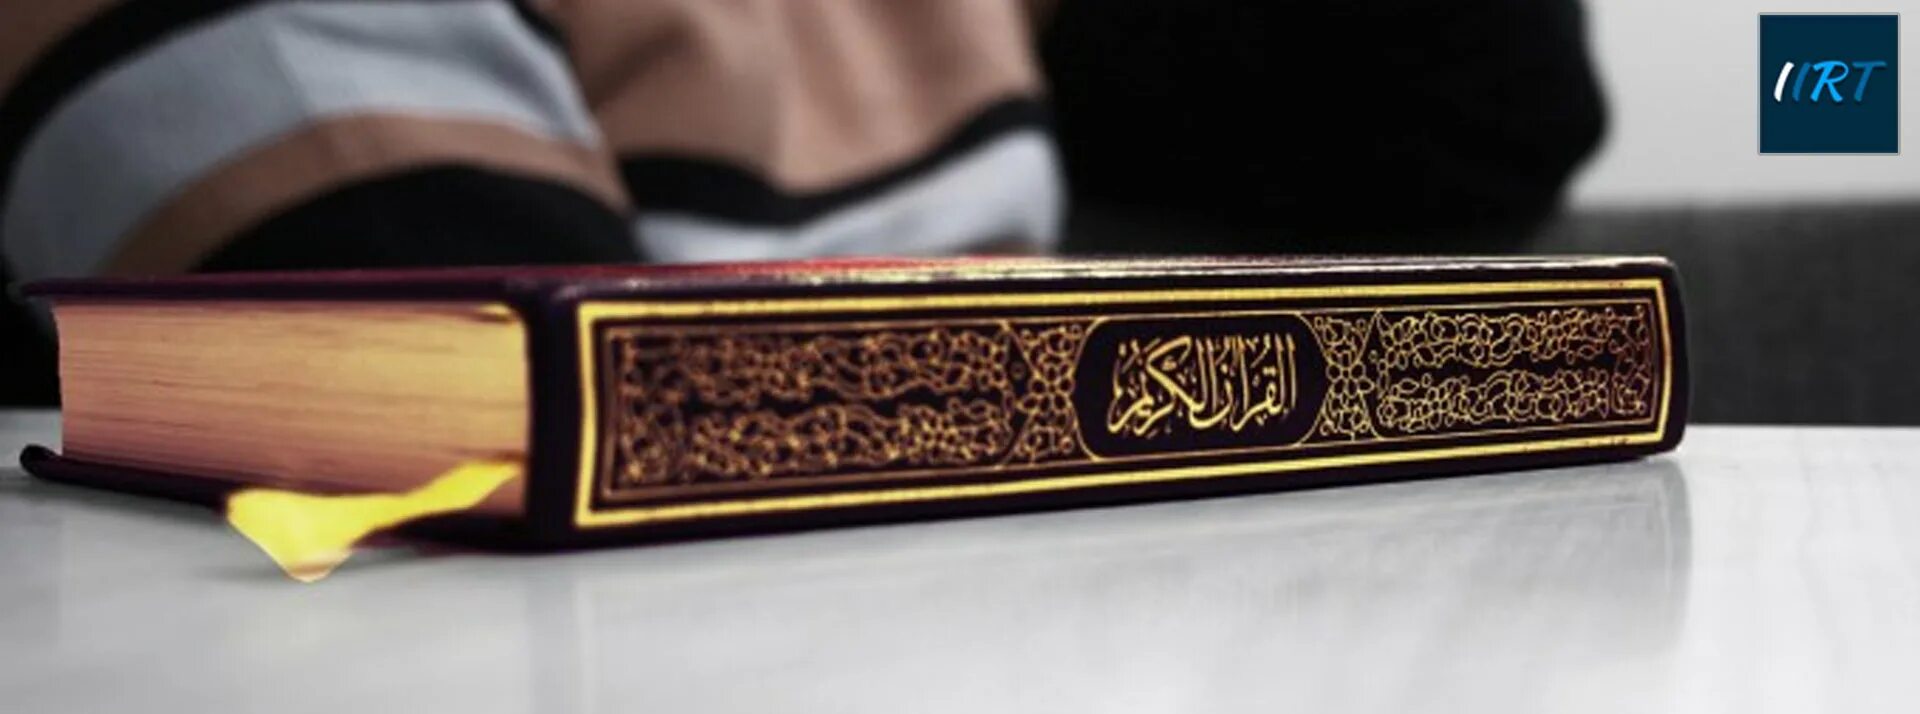 Читаем коран медленно. Коран. Микрофон Коран. Коран ручной. Коран фон.